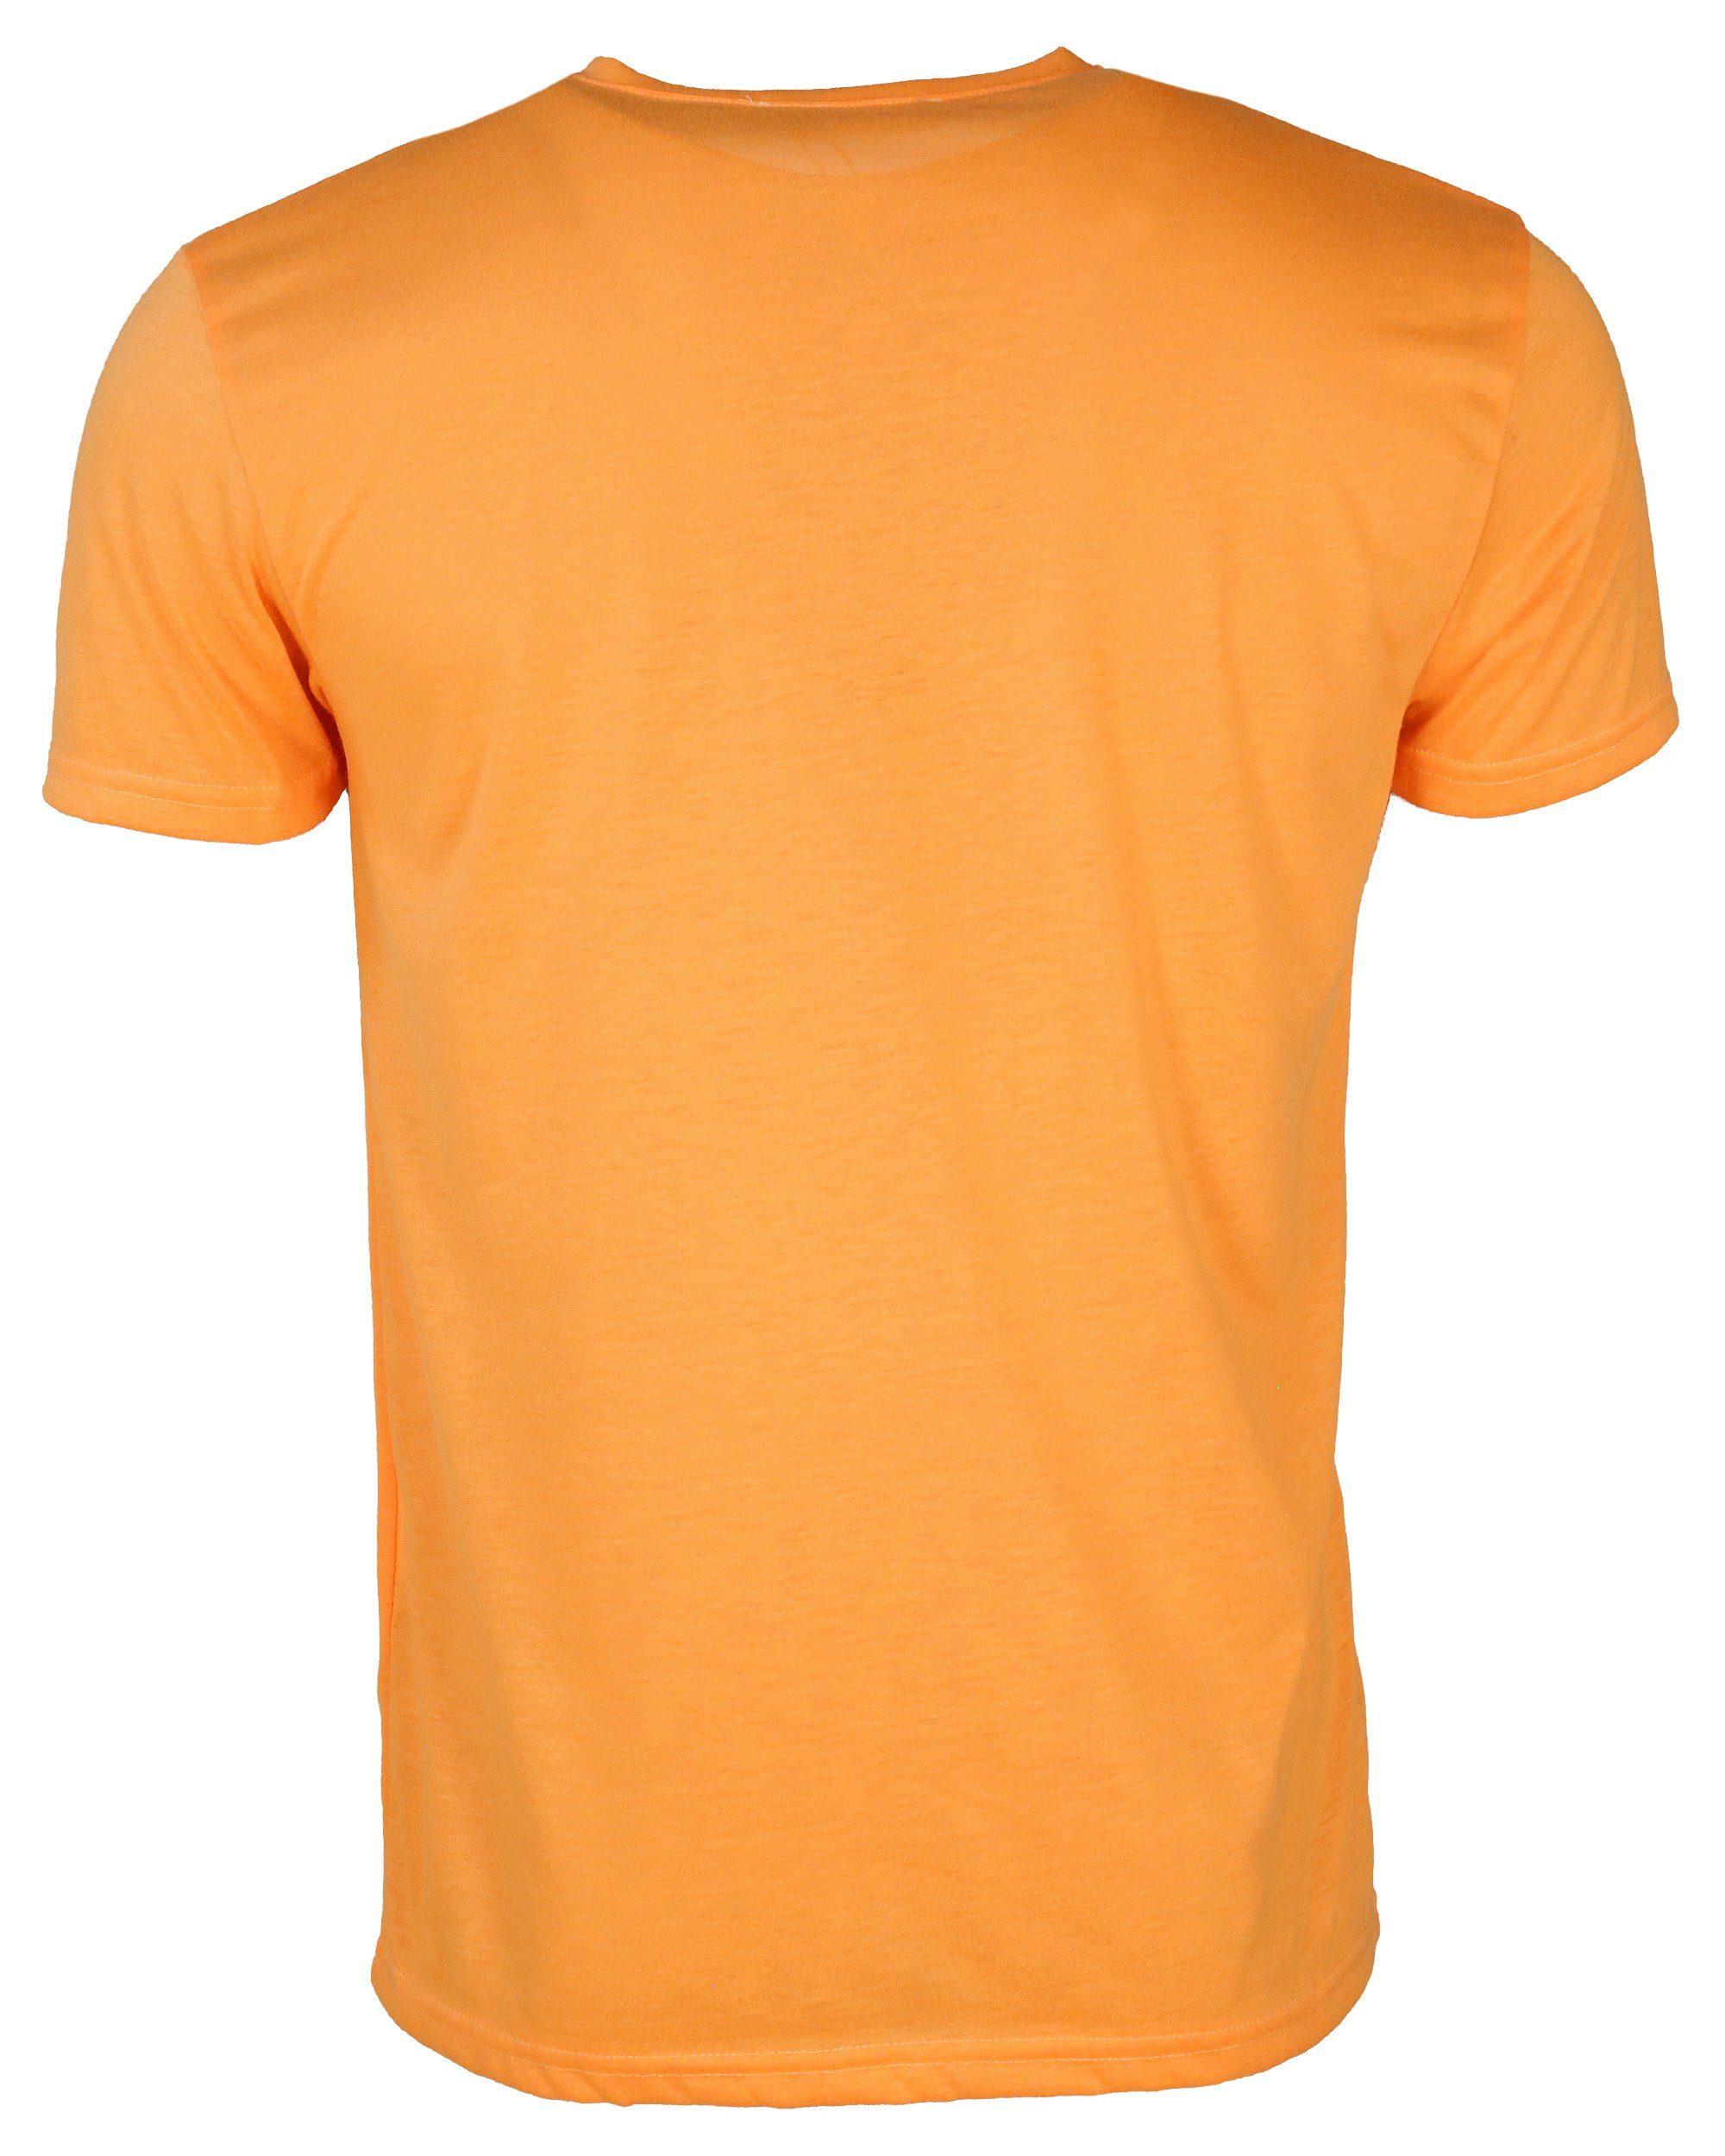 TOP GUN T-Shirt Radiate TG20192062 orange